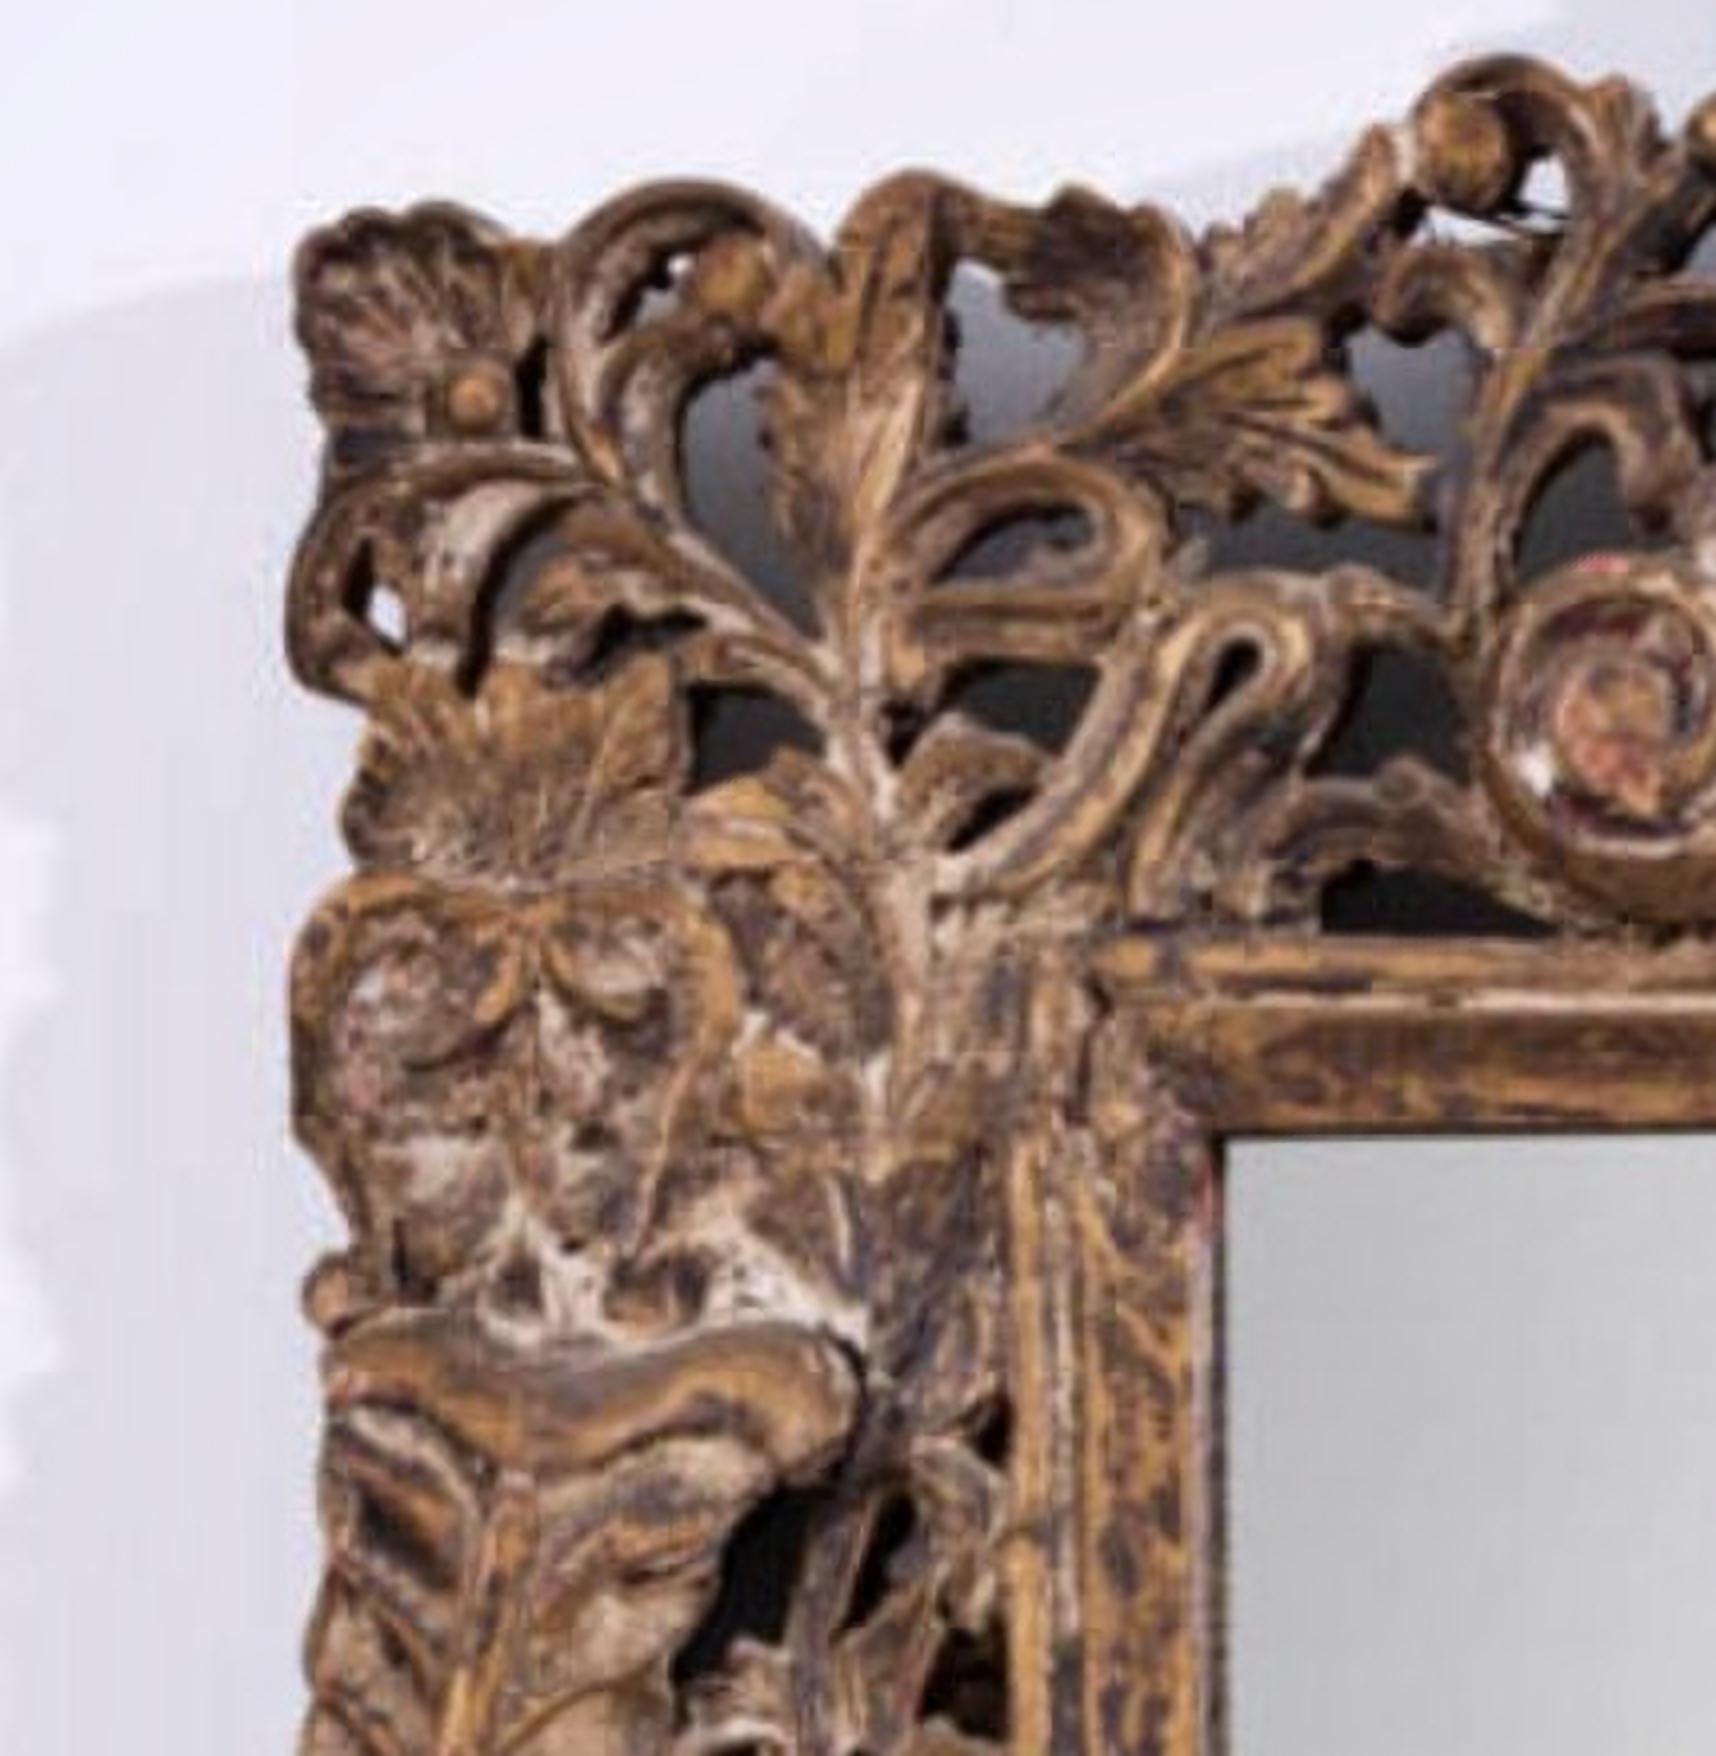  Miroir italien 18ème siècle
Cadre en bois sculpté et peint avec des éléments végétaux. Petites imperfections et défauts.
Dim. : 90x60 cm.
bonnes conditions